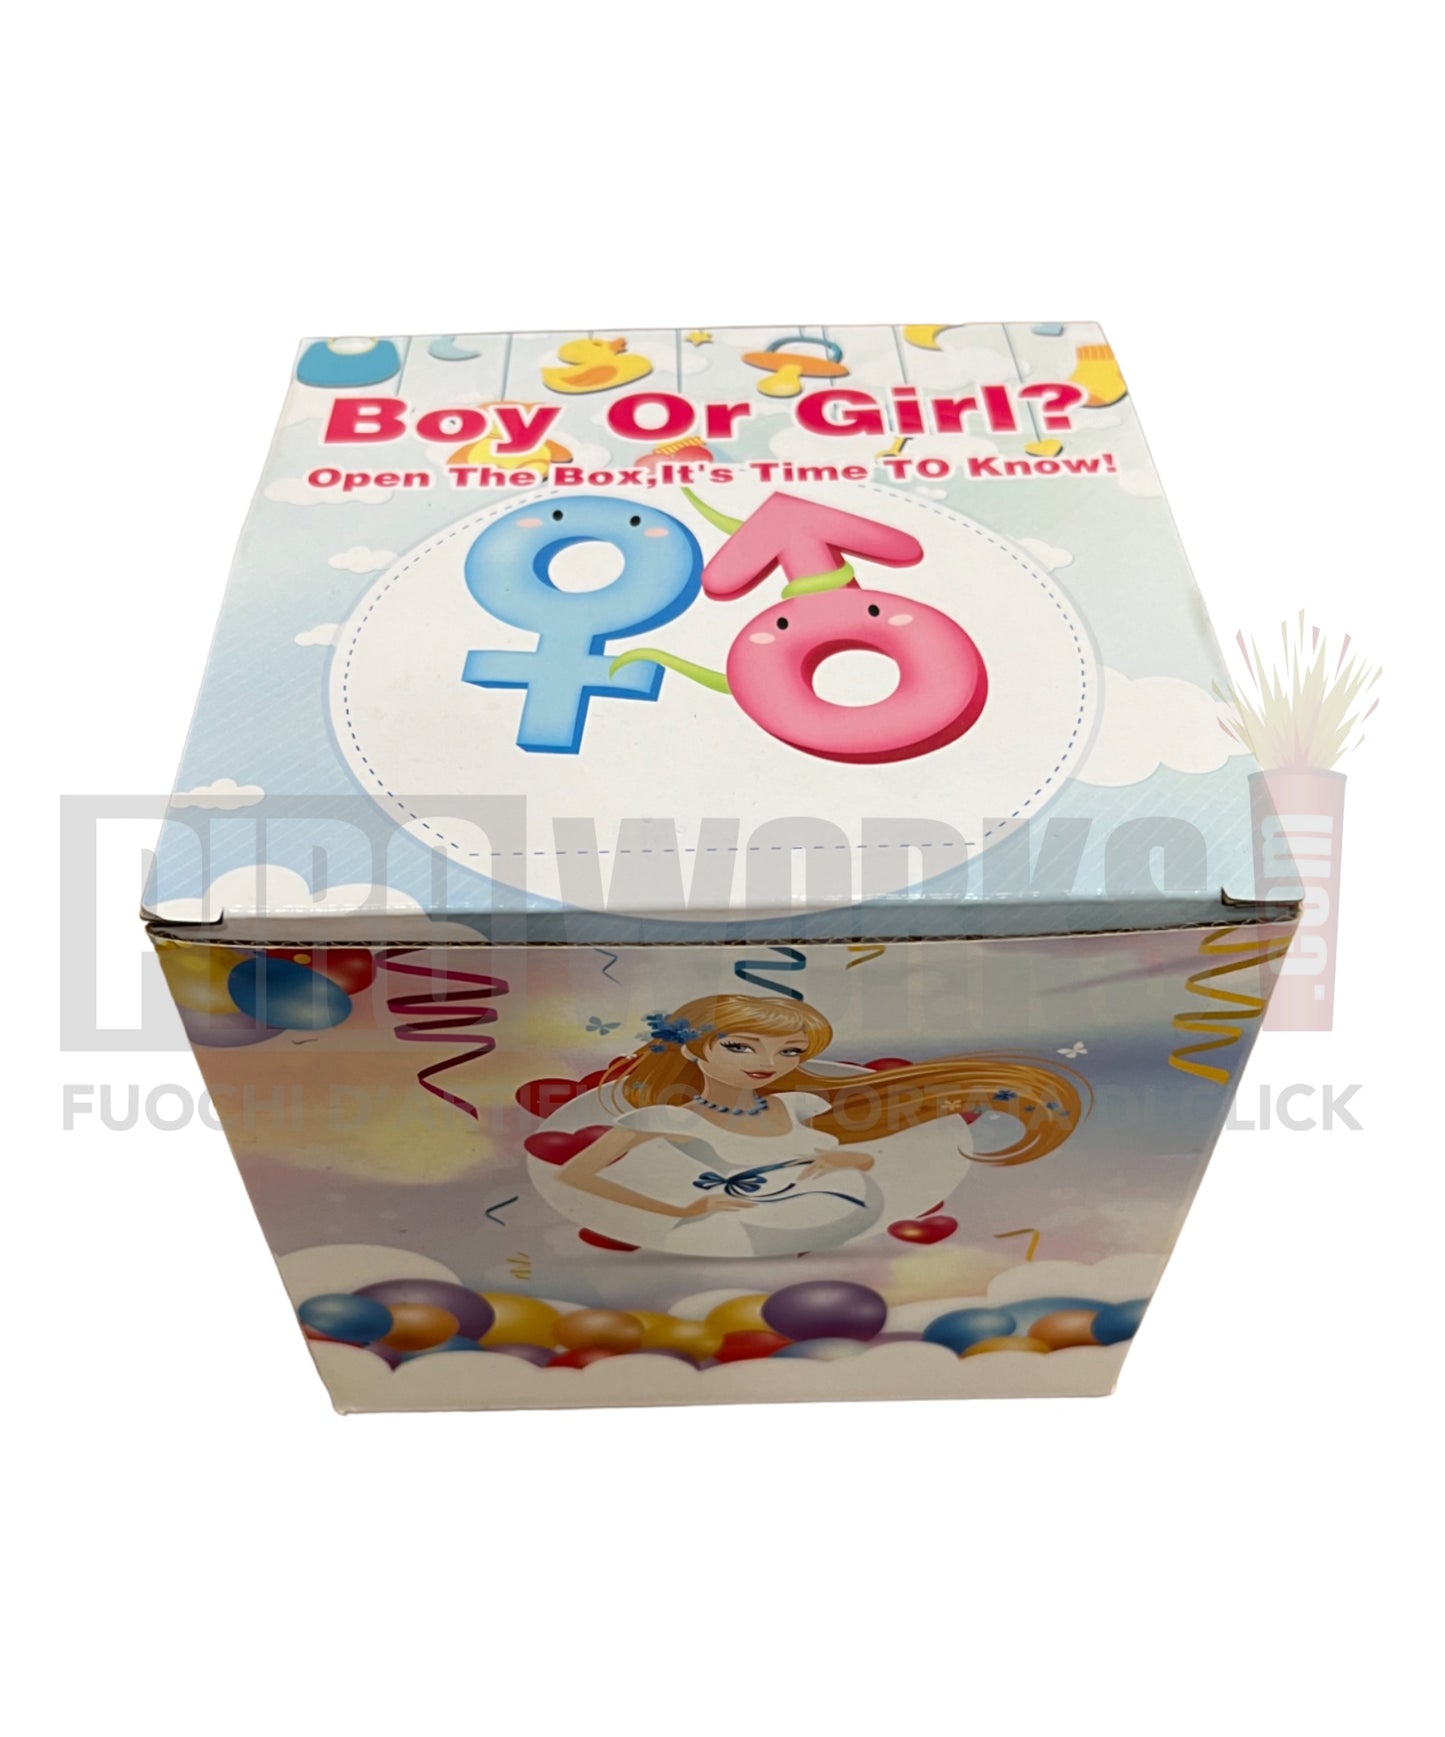 Baby Shower | Boy or Girl 100 GIRL Shots